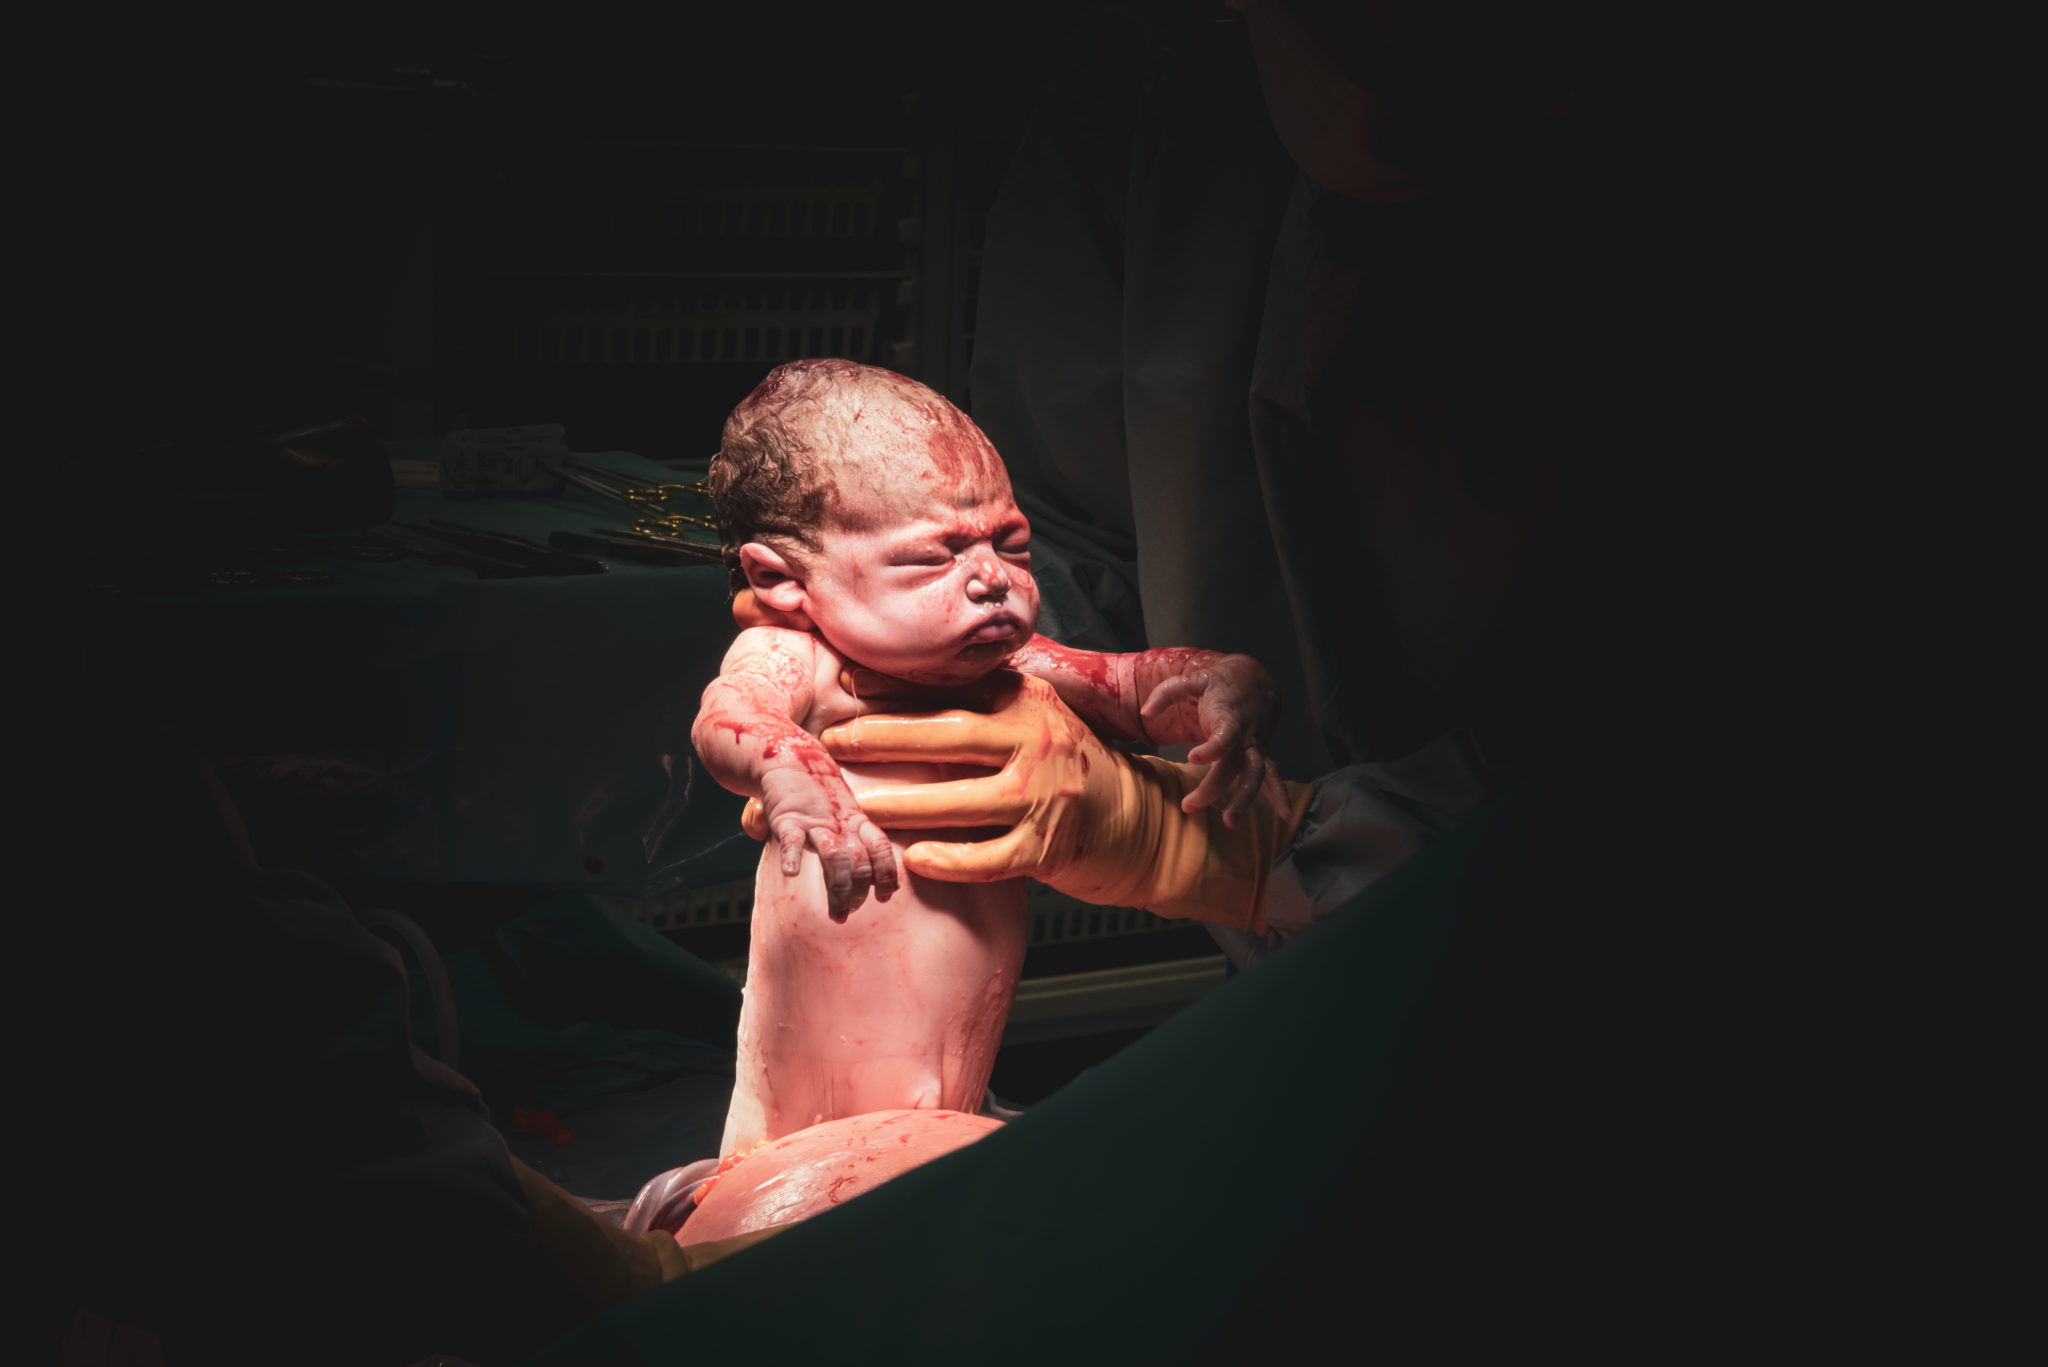 Geboorteverhaal Renate - Doula - Geboortefotograaf - Bracke Cynthia - DoulaGraaf - speodkeizersnede - keizersnede